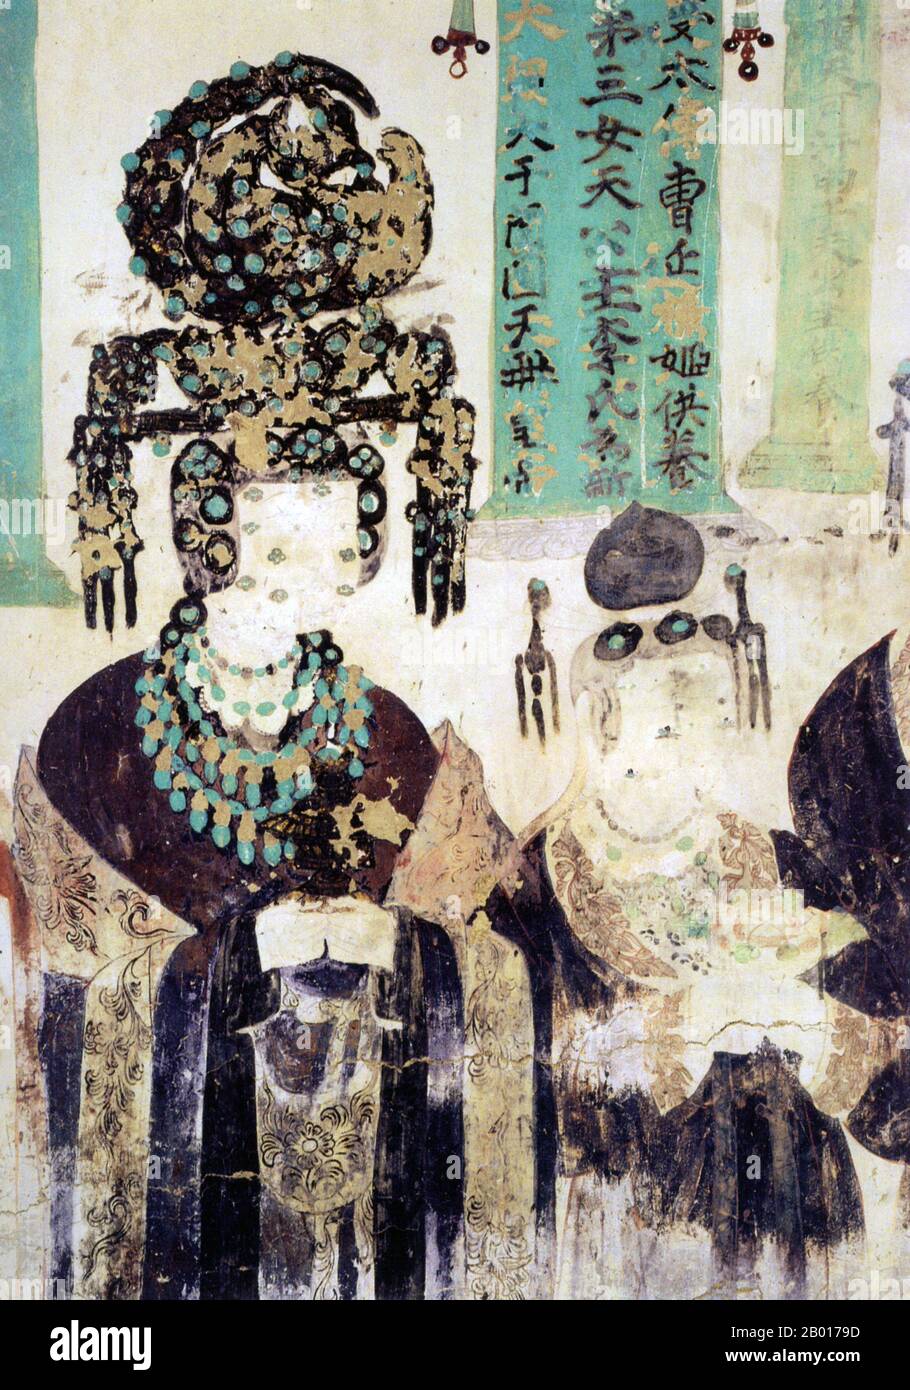 Chine : une princesse khotanaise, épouse de Cao Yuanzhang, roi d'Hexi.Mogao Cave 61, Dunhuang, période des cinq dynasties (c.907-960).Les Caos contrôlaient Hexi et Dunhuang au 10th siècle.Ils ont formé des alliances avec leurs voisins de Kholan, souvent par intermariage.Les femmes Cao représentées dans les grottes de Mogao ont toutes été peintes avec des vêtements et des bijoux élaborés.Même le maquillage sur leur visage est encore clairement visible aujourd'hui. Banque D'Images